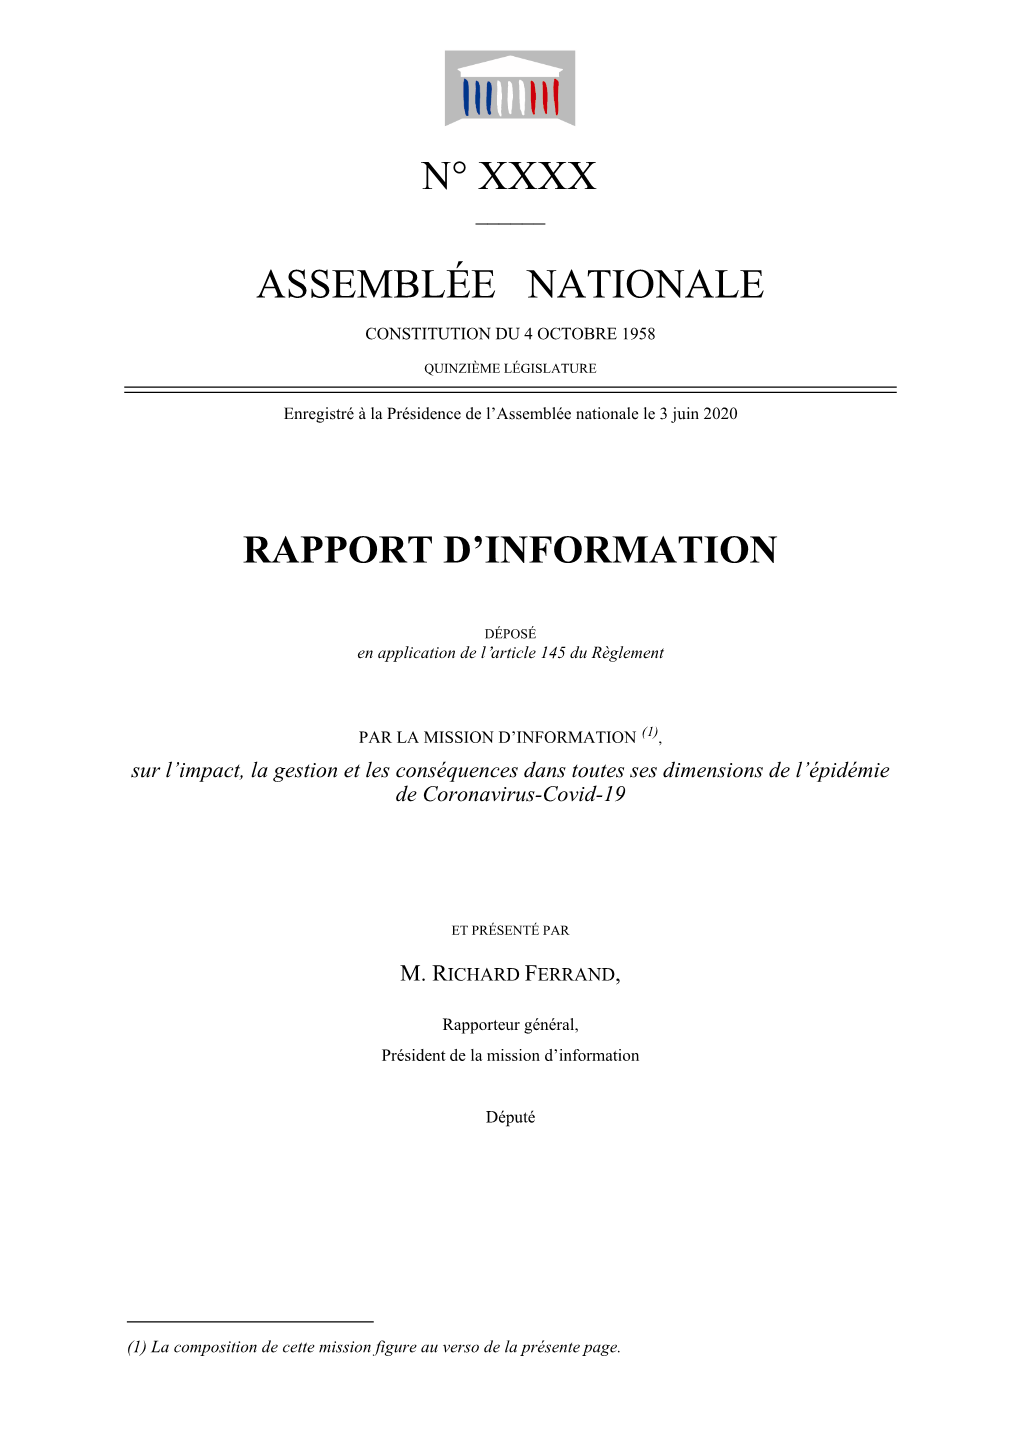 Rapport D'étape De La Mission D'information an Covid